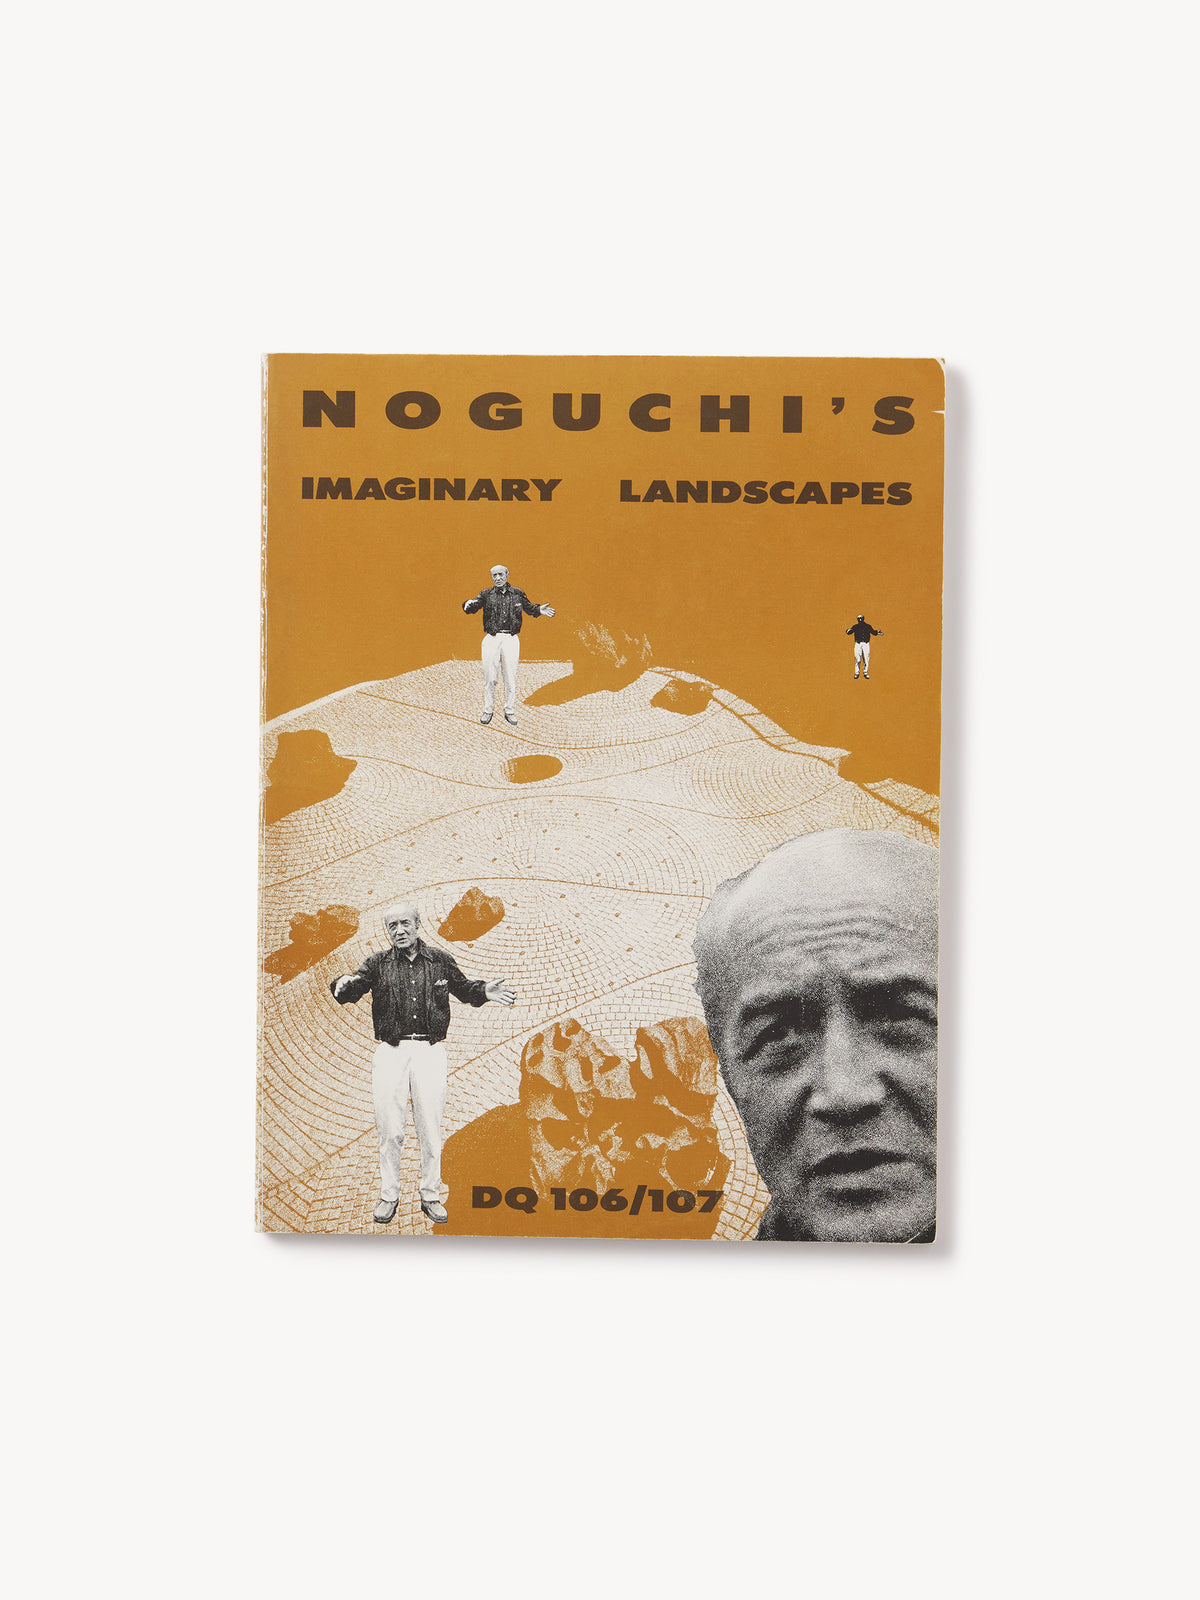 Noguchi's Imaginary Landscapes - 0165 - Product Flat